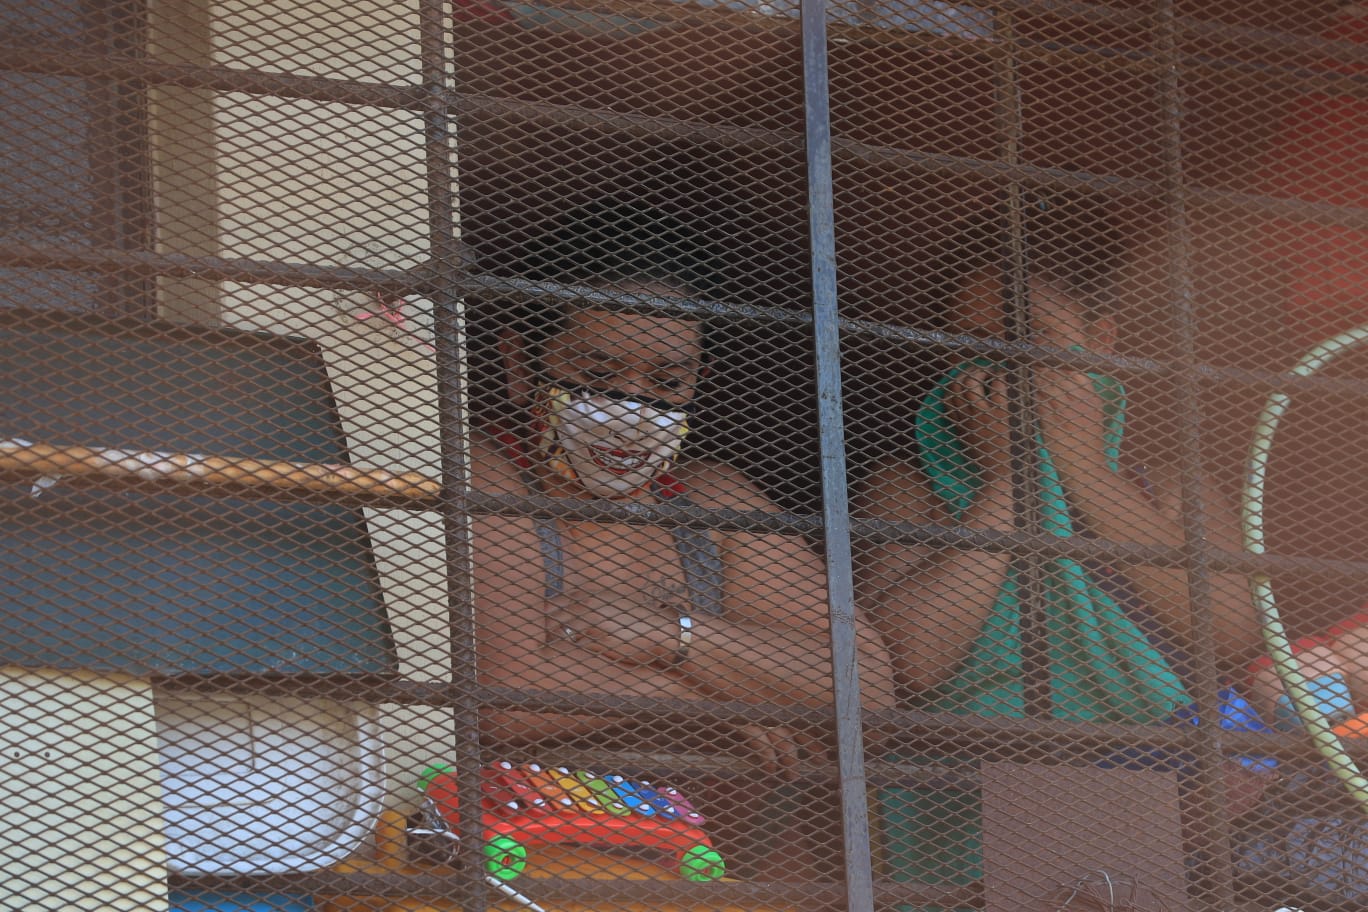 Las reclusas del Centro Preventivo de Mujeres Santa Teresa, en la zona 18, señalan malos tratos. (Foto Prensa Libre: María Renée Barrientos)